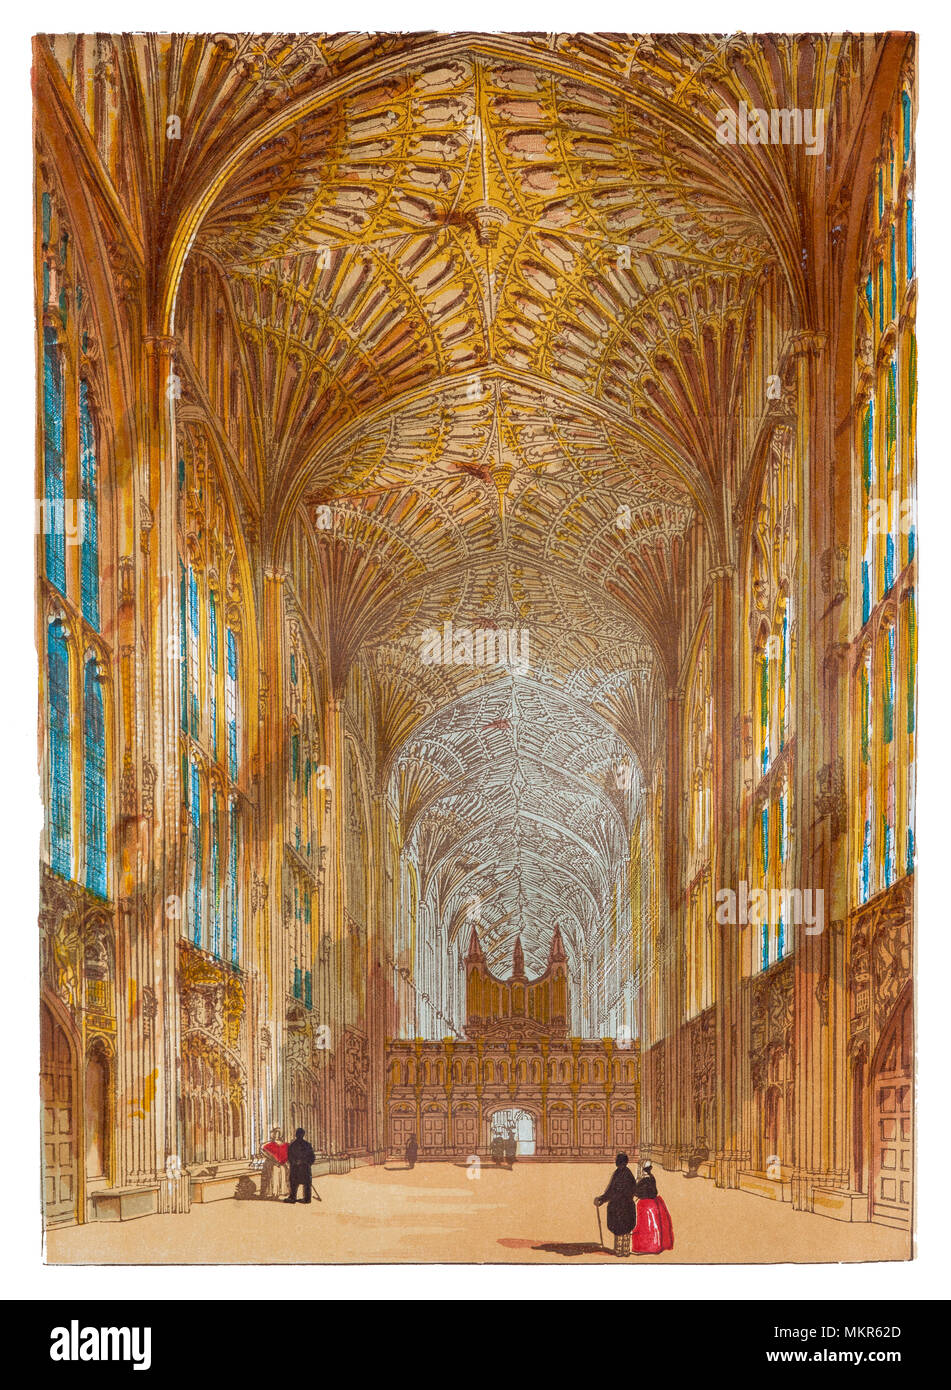 King's College Chapel è la Cappella del King s College dell Università di Cambridge. È considerato uno dei migliori esempi del tardo gotico perpendicolare architettura inglese. La cappella fu costruito in più fasi da una successione di re d'Inghilterra dal 1446 al 1515, un periodo che attraversava le guerre del Rose. La cappella di grandi vetrate colorate non sono stati completati fino al 1531, e il suo primo Rinascimento rood dello schermo è stata eretta nel 1532-36. La cappella è attiva una casa di culto e la casa del re College coro. Foto Stock